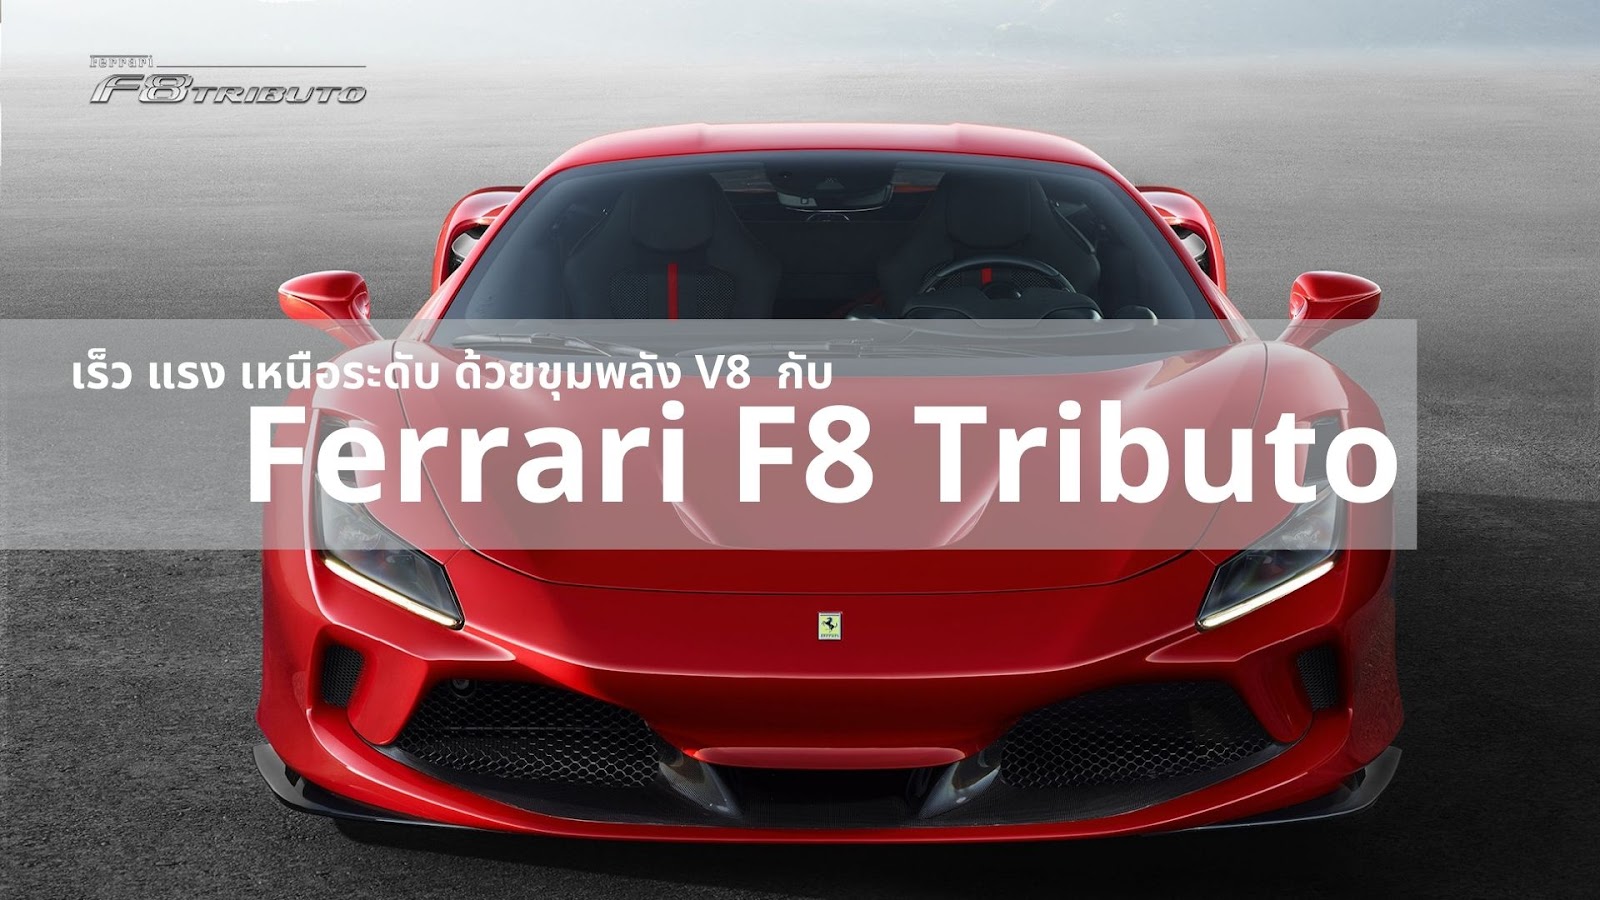 ทำความรู้จักกับ Ferrari F8 Tributo กับประสบการณ์ขับขี่ขั้นสุดด้วยพลัง V8